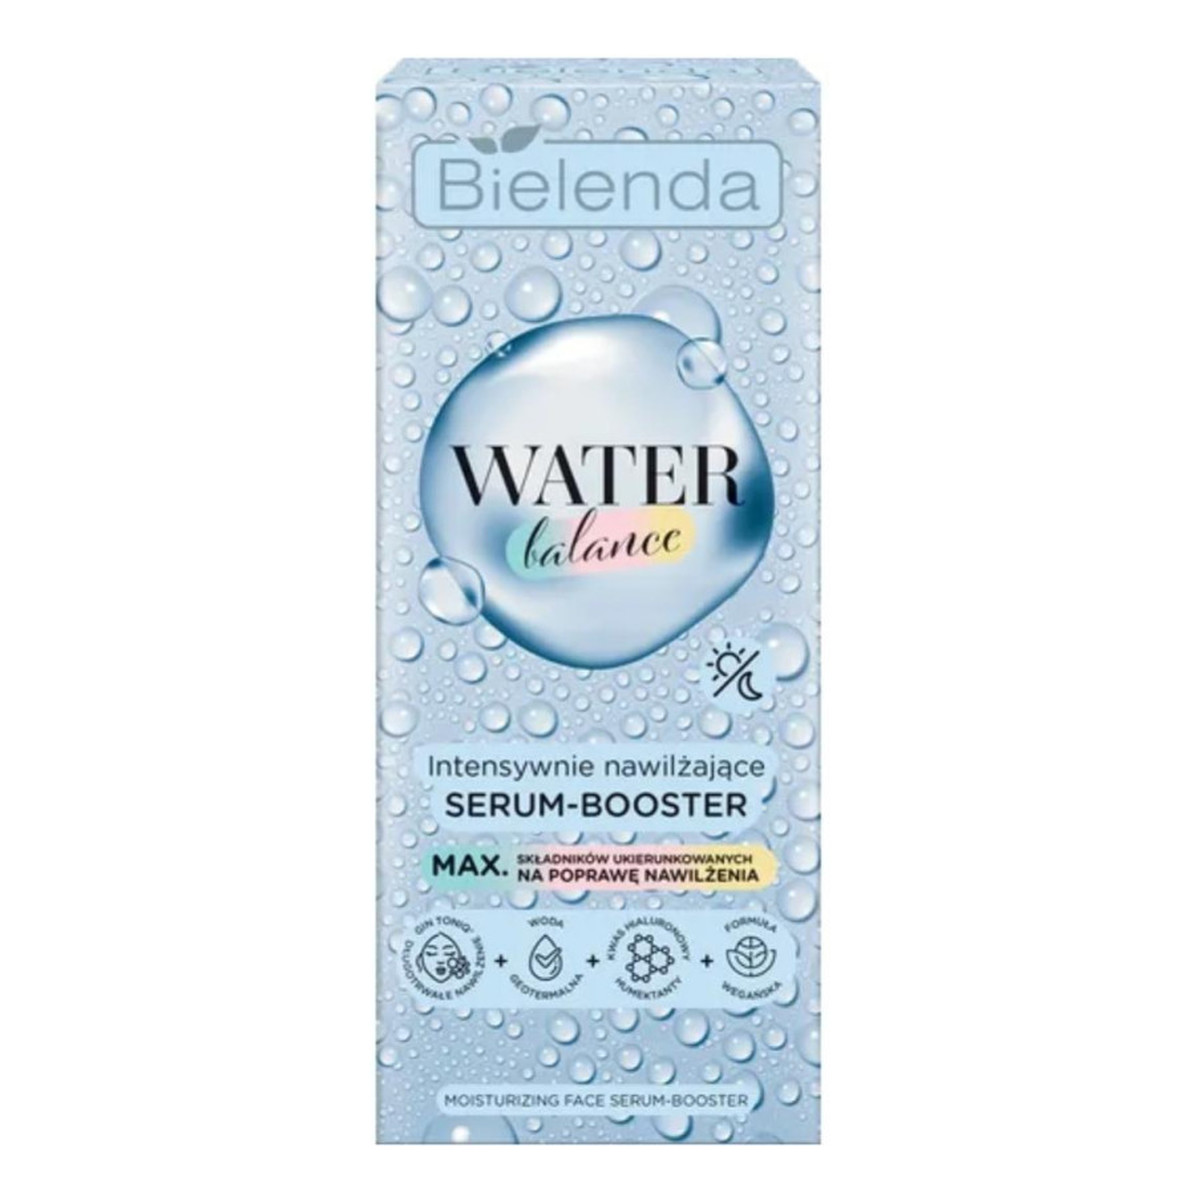 Bielenda Water Balance Intensywnie nawilżające serum-booster do twarzy 30g